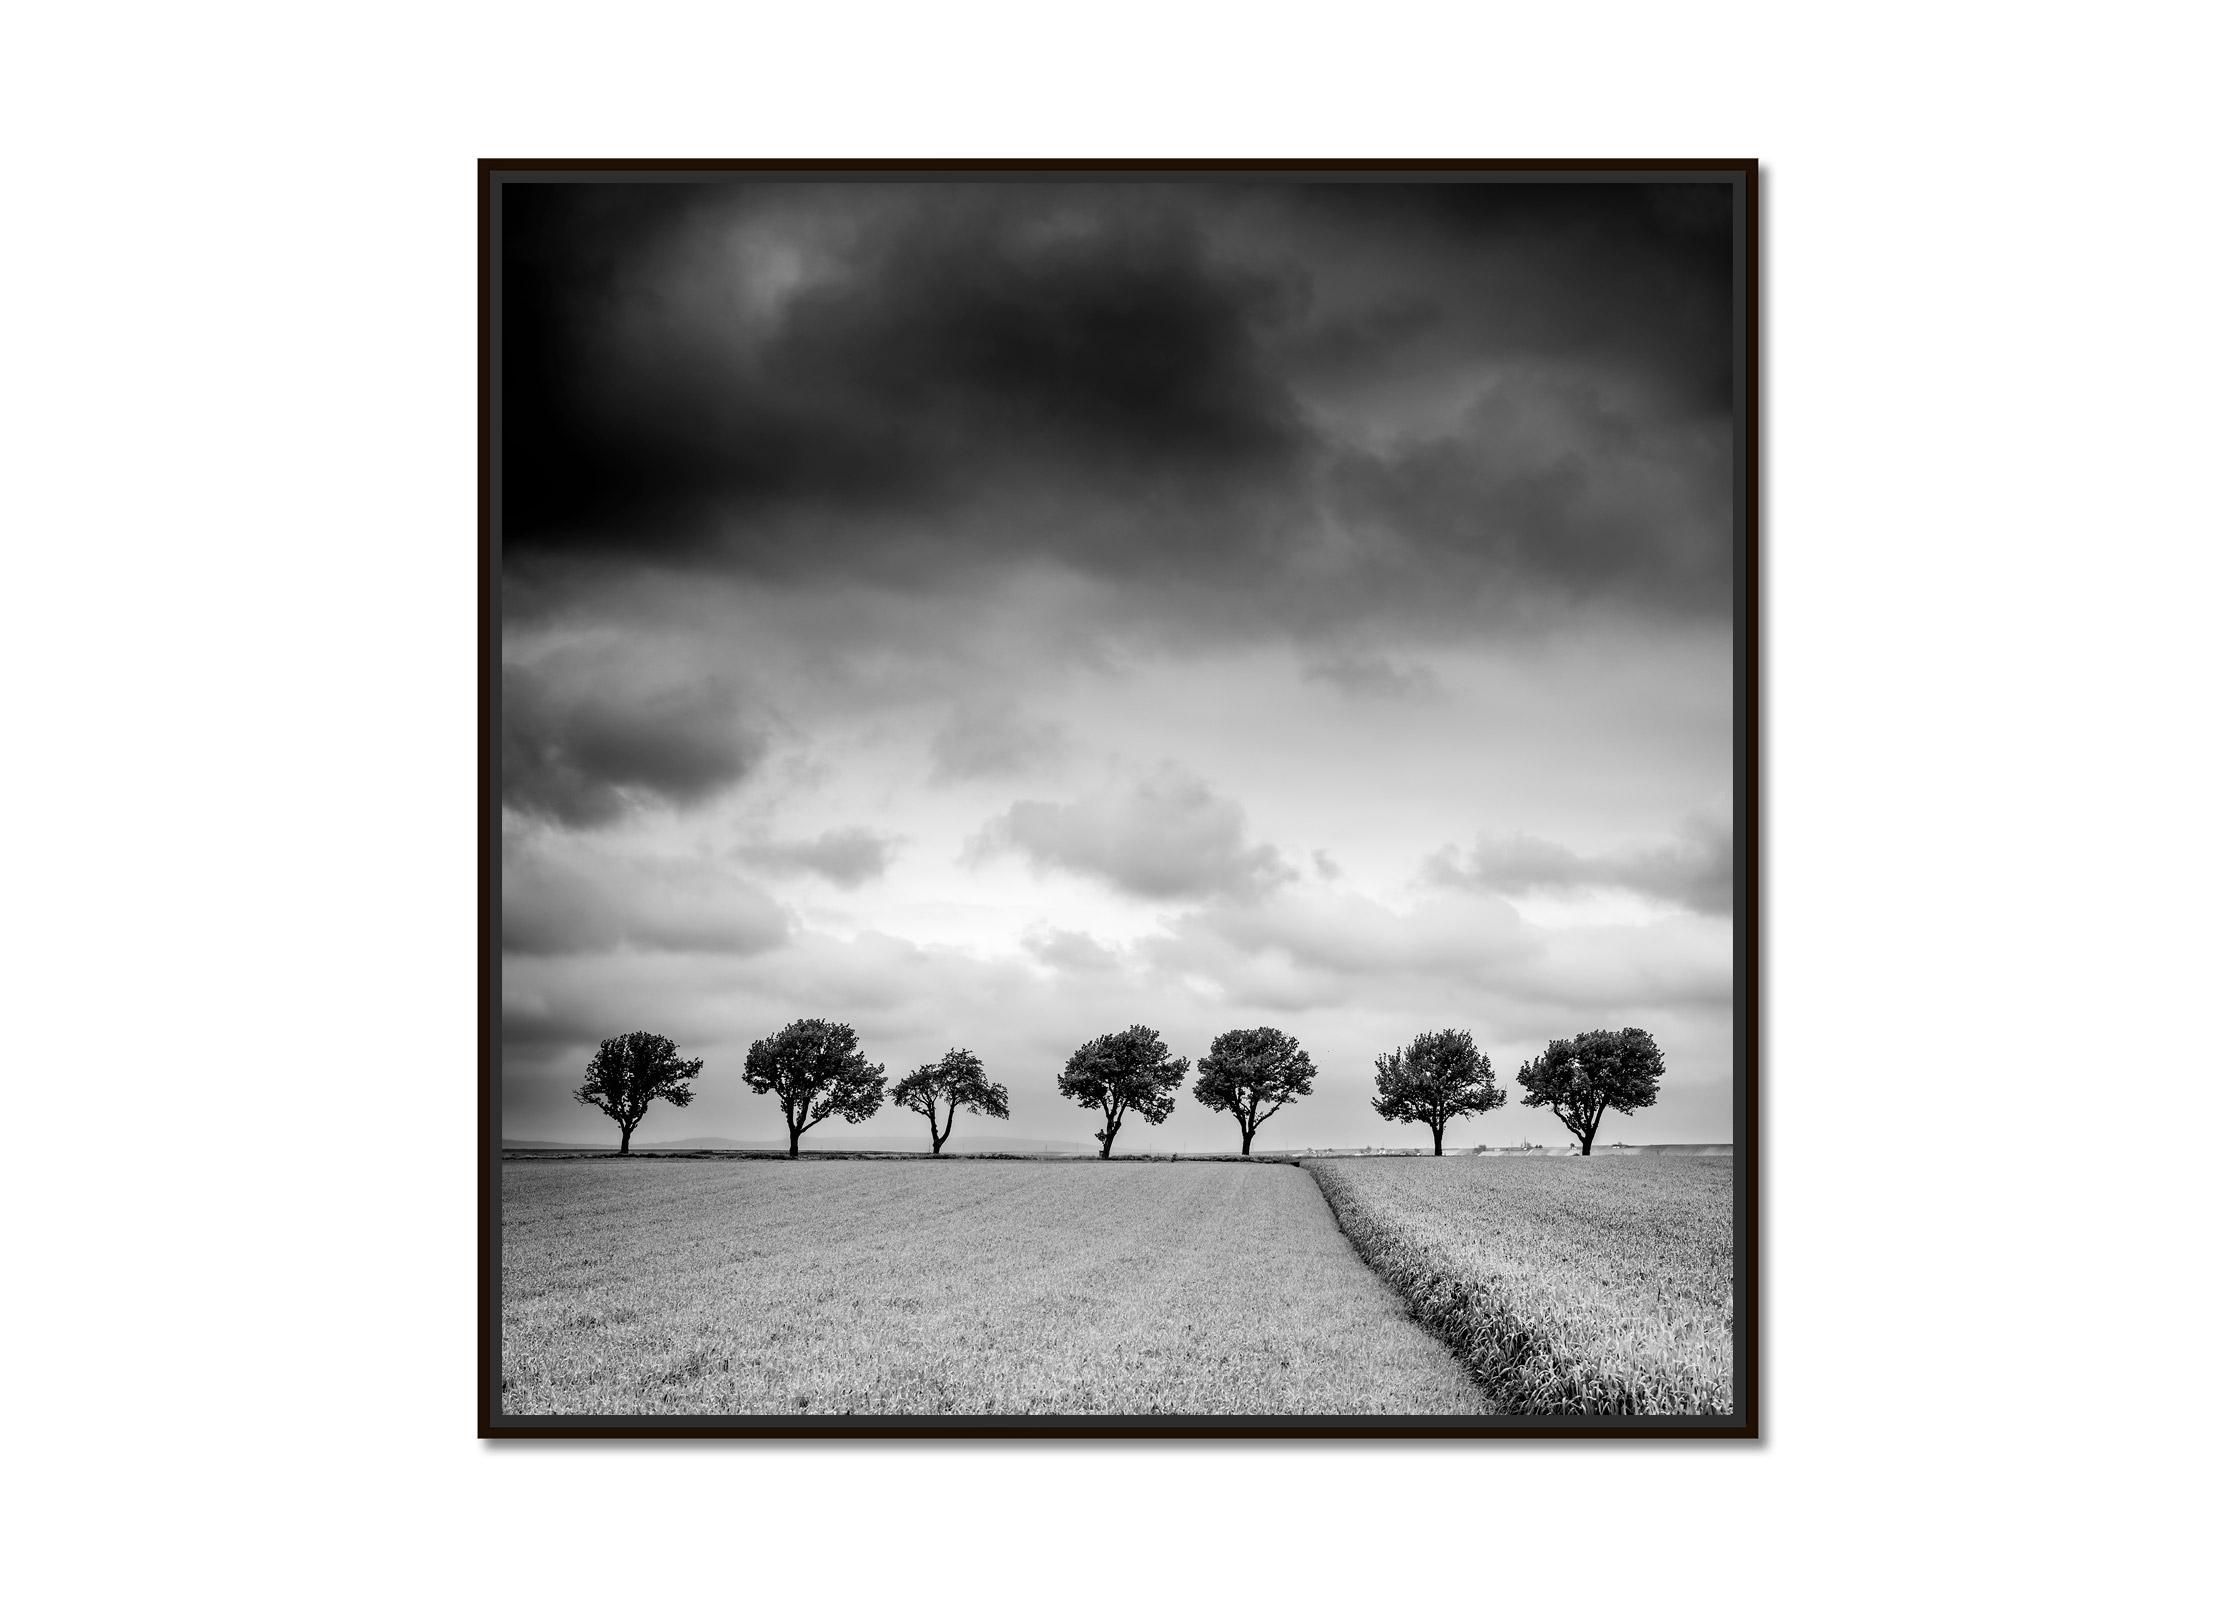 Bäume am Rande des Feldes, Wolken, Gewitter, Sturm, Schwarz-Weiß-Kunstlandschaftsfotografie – Print von Gerald Berghammer